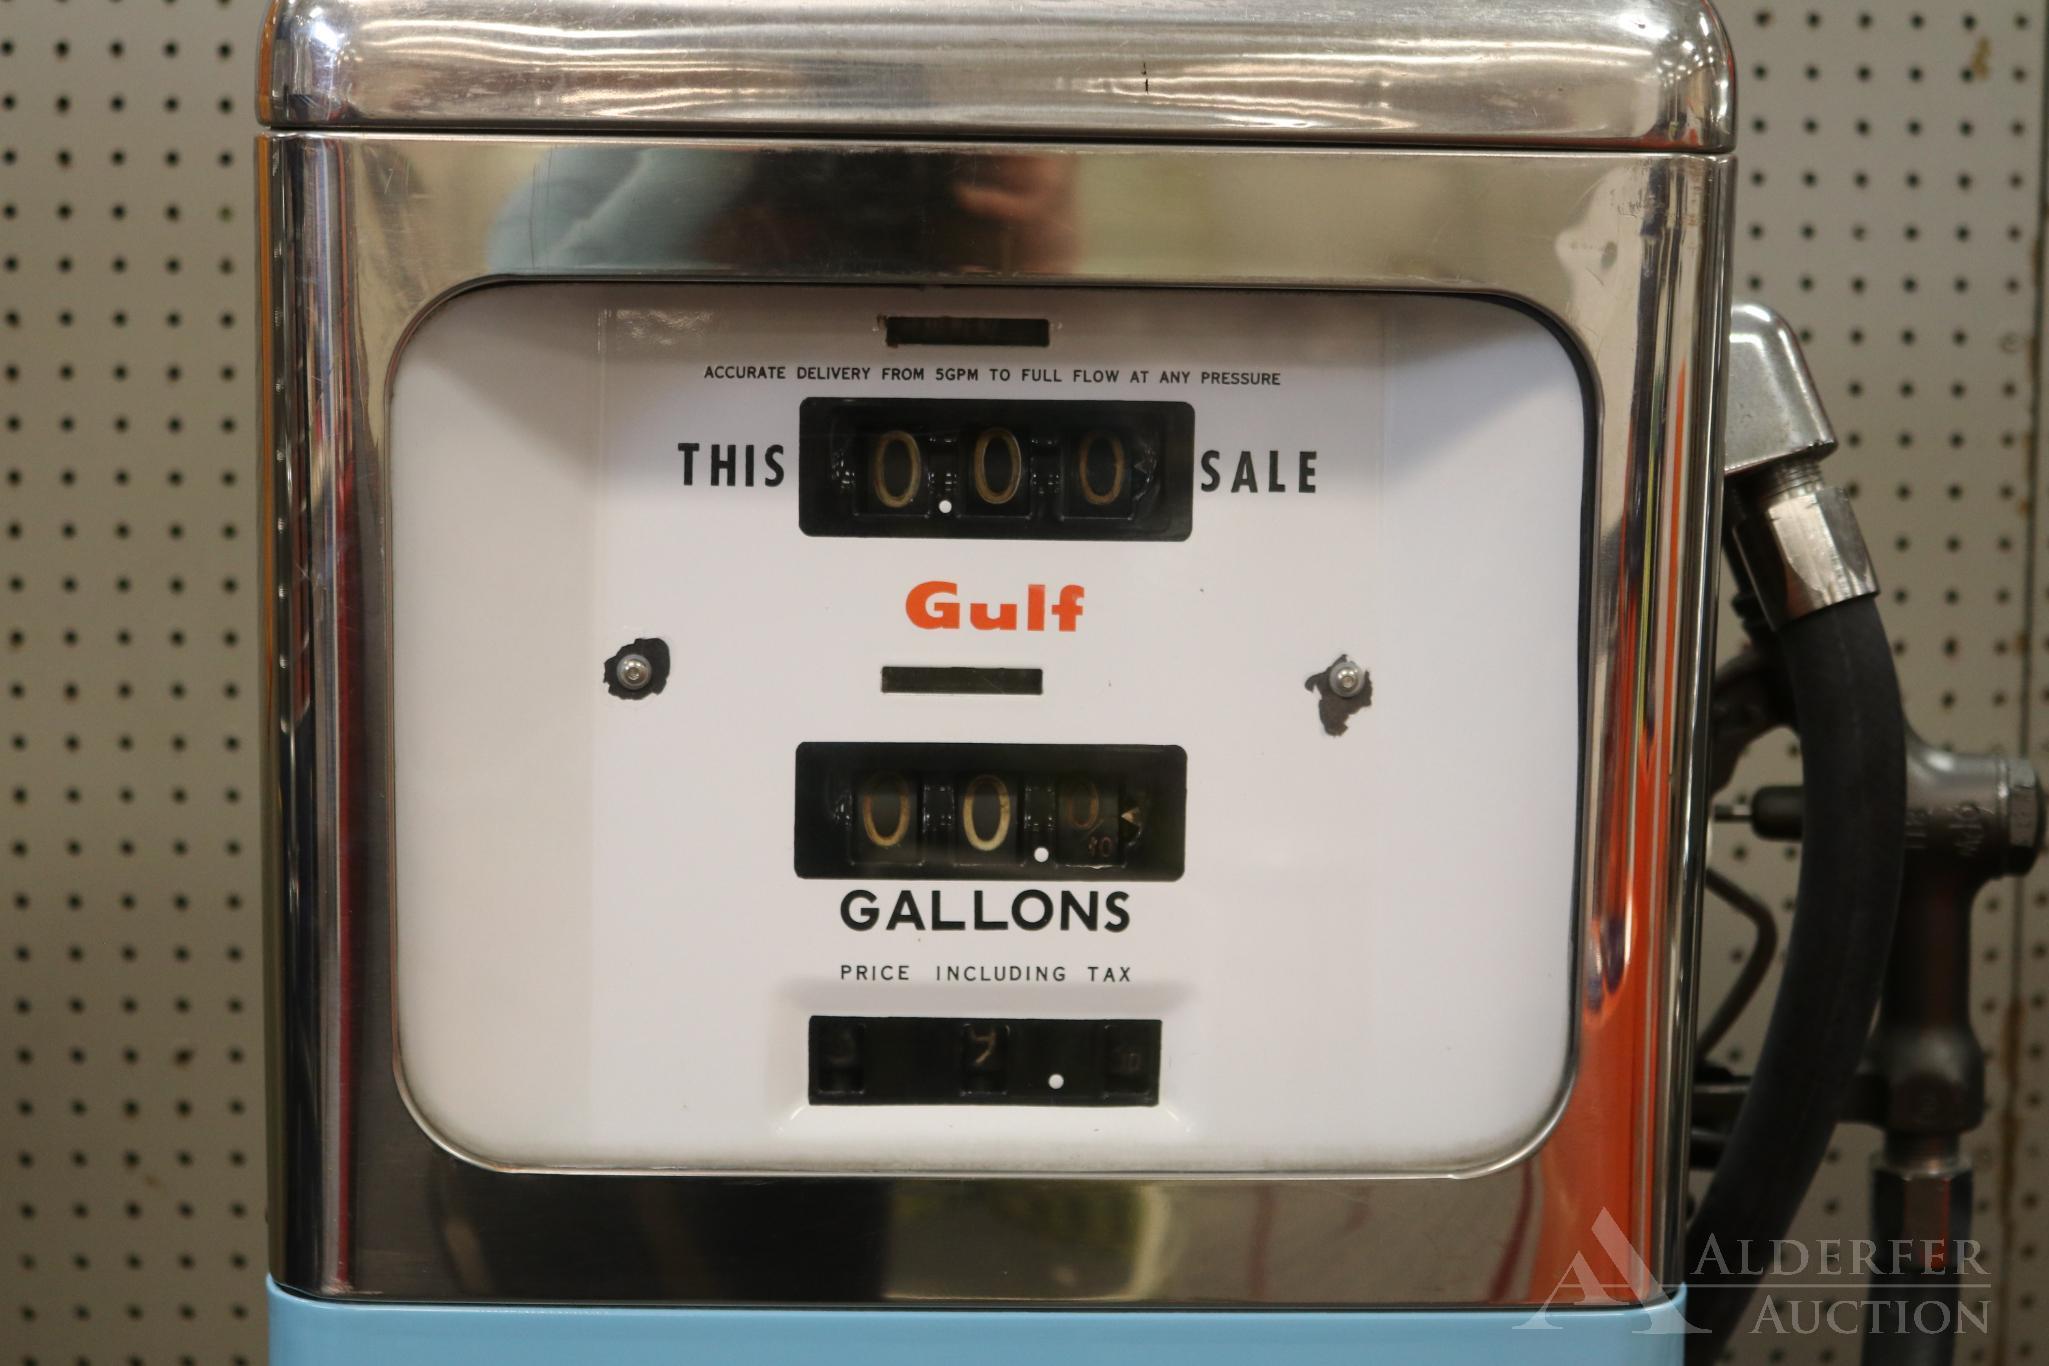 Gulf Diesel Gasoline in Gas Pump